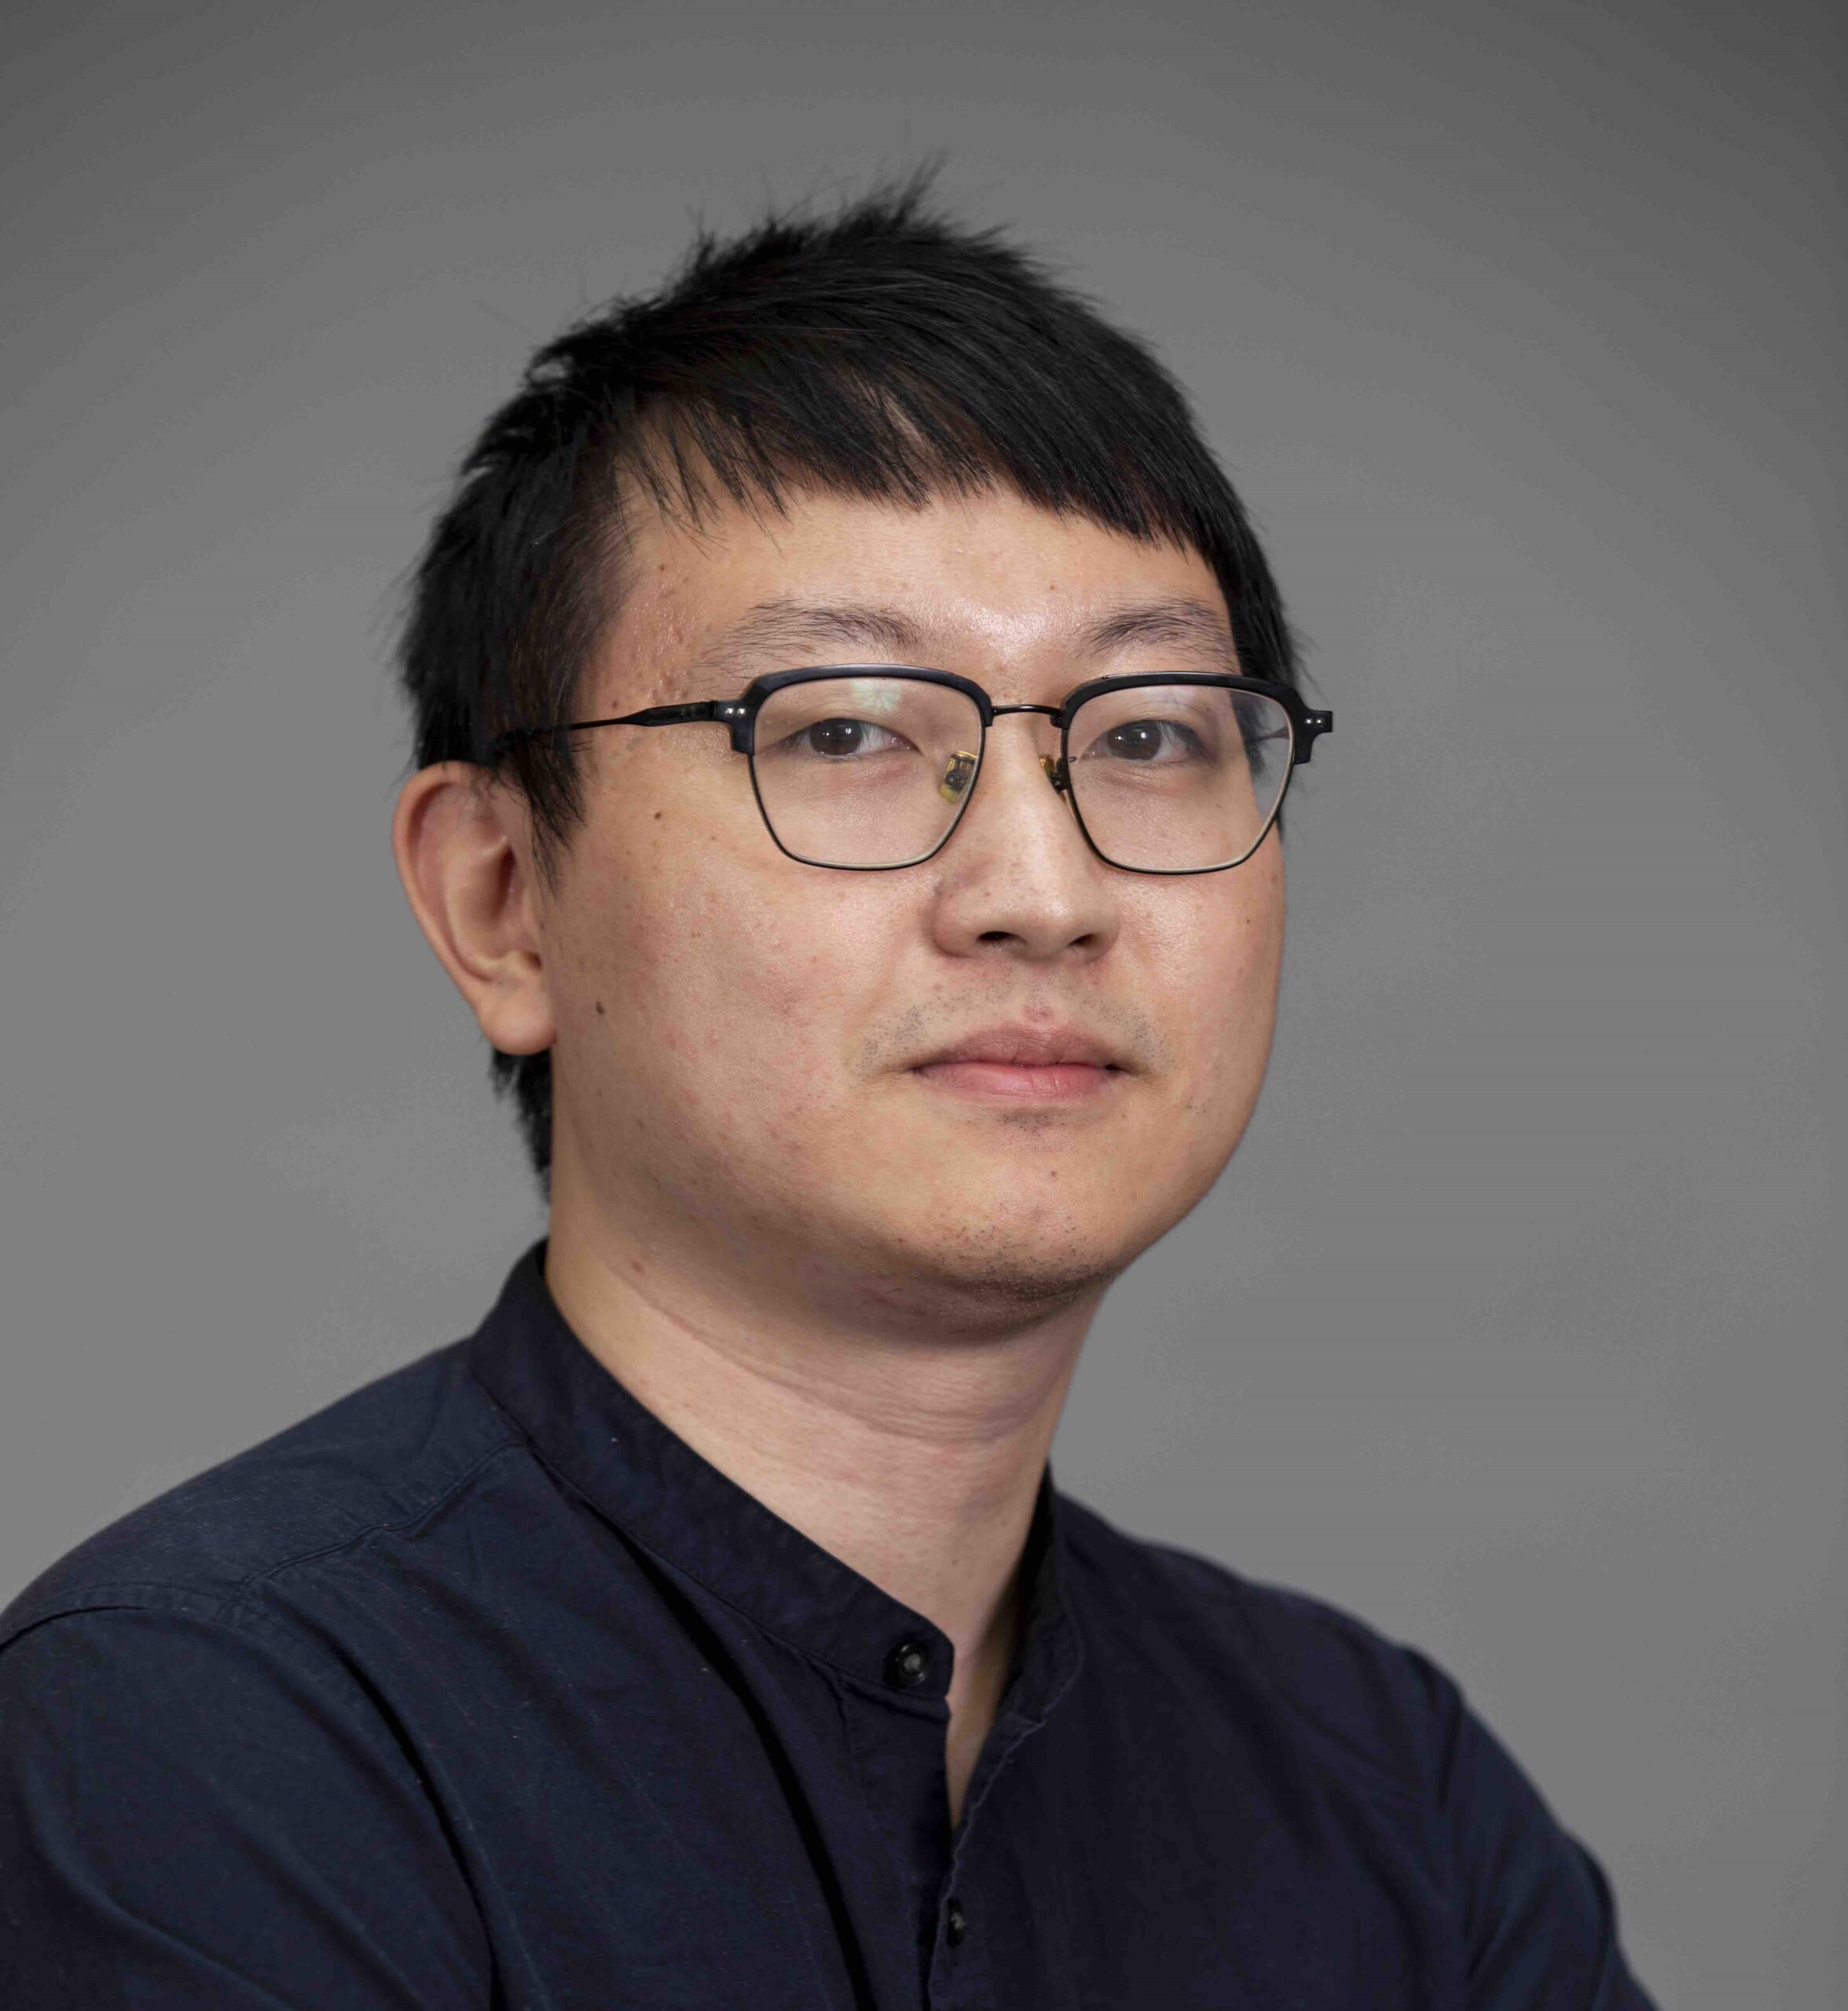 Portrait of Weiteng Chen